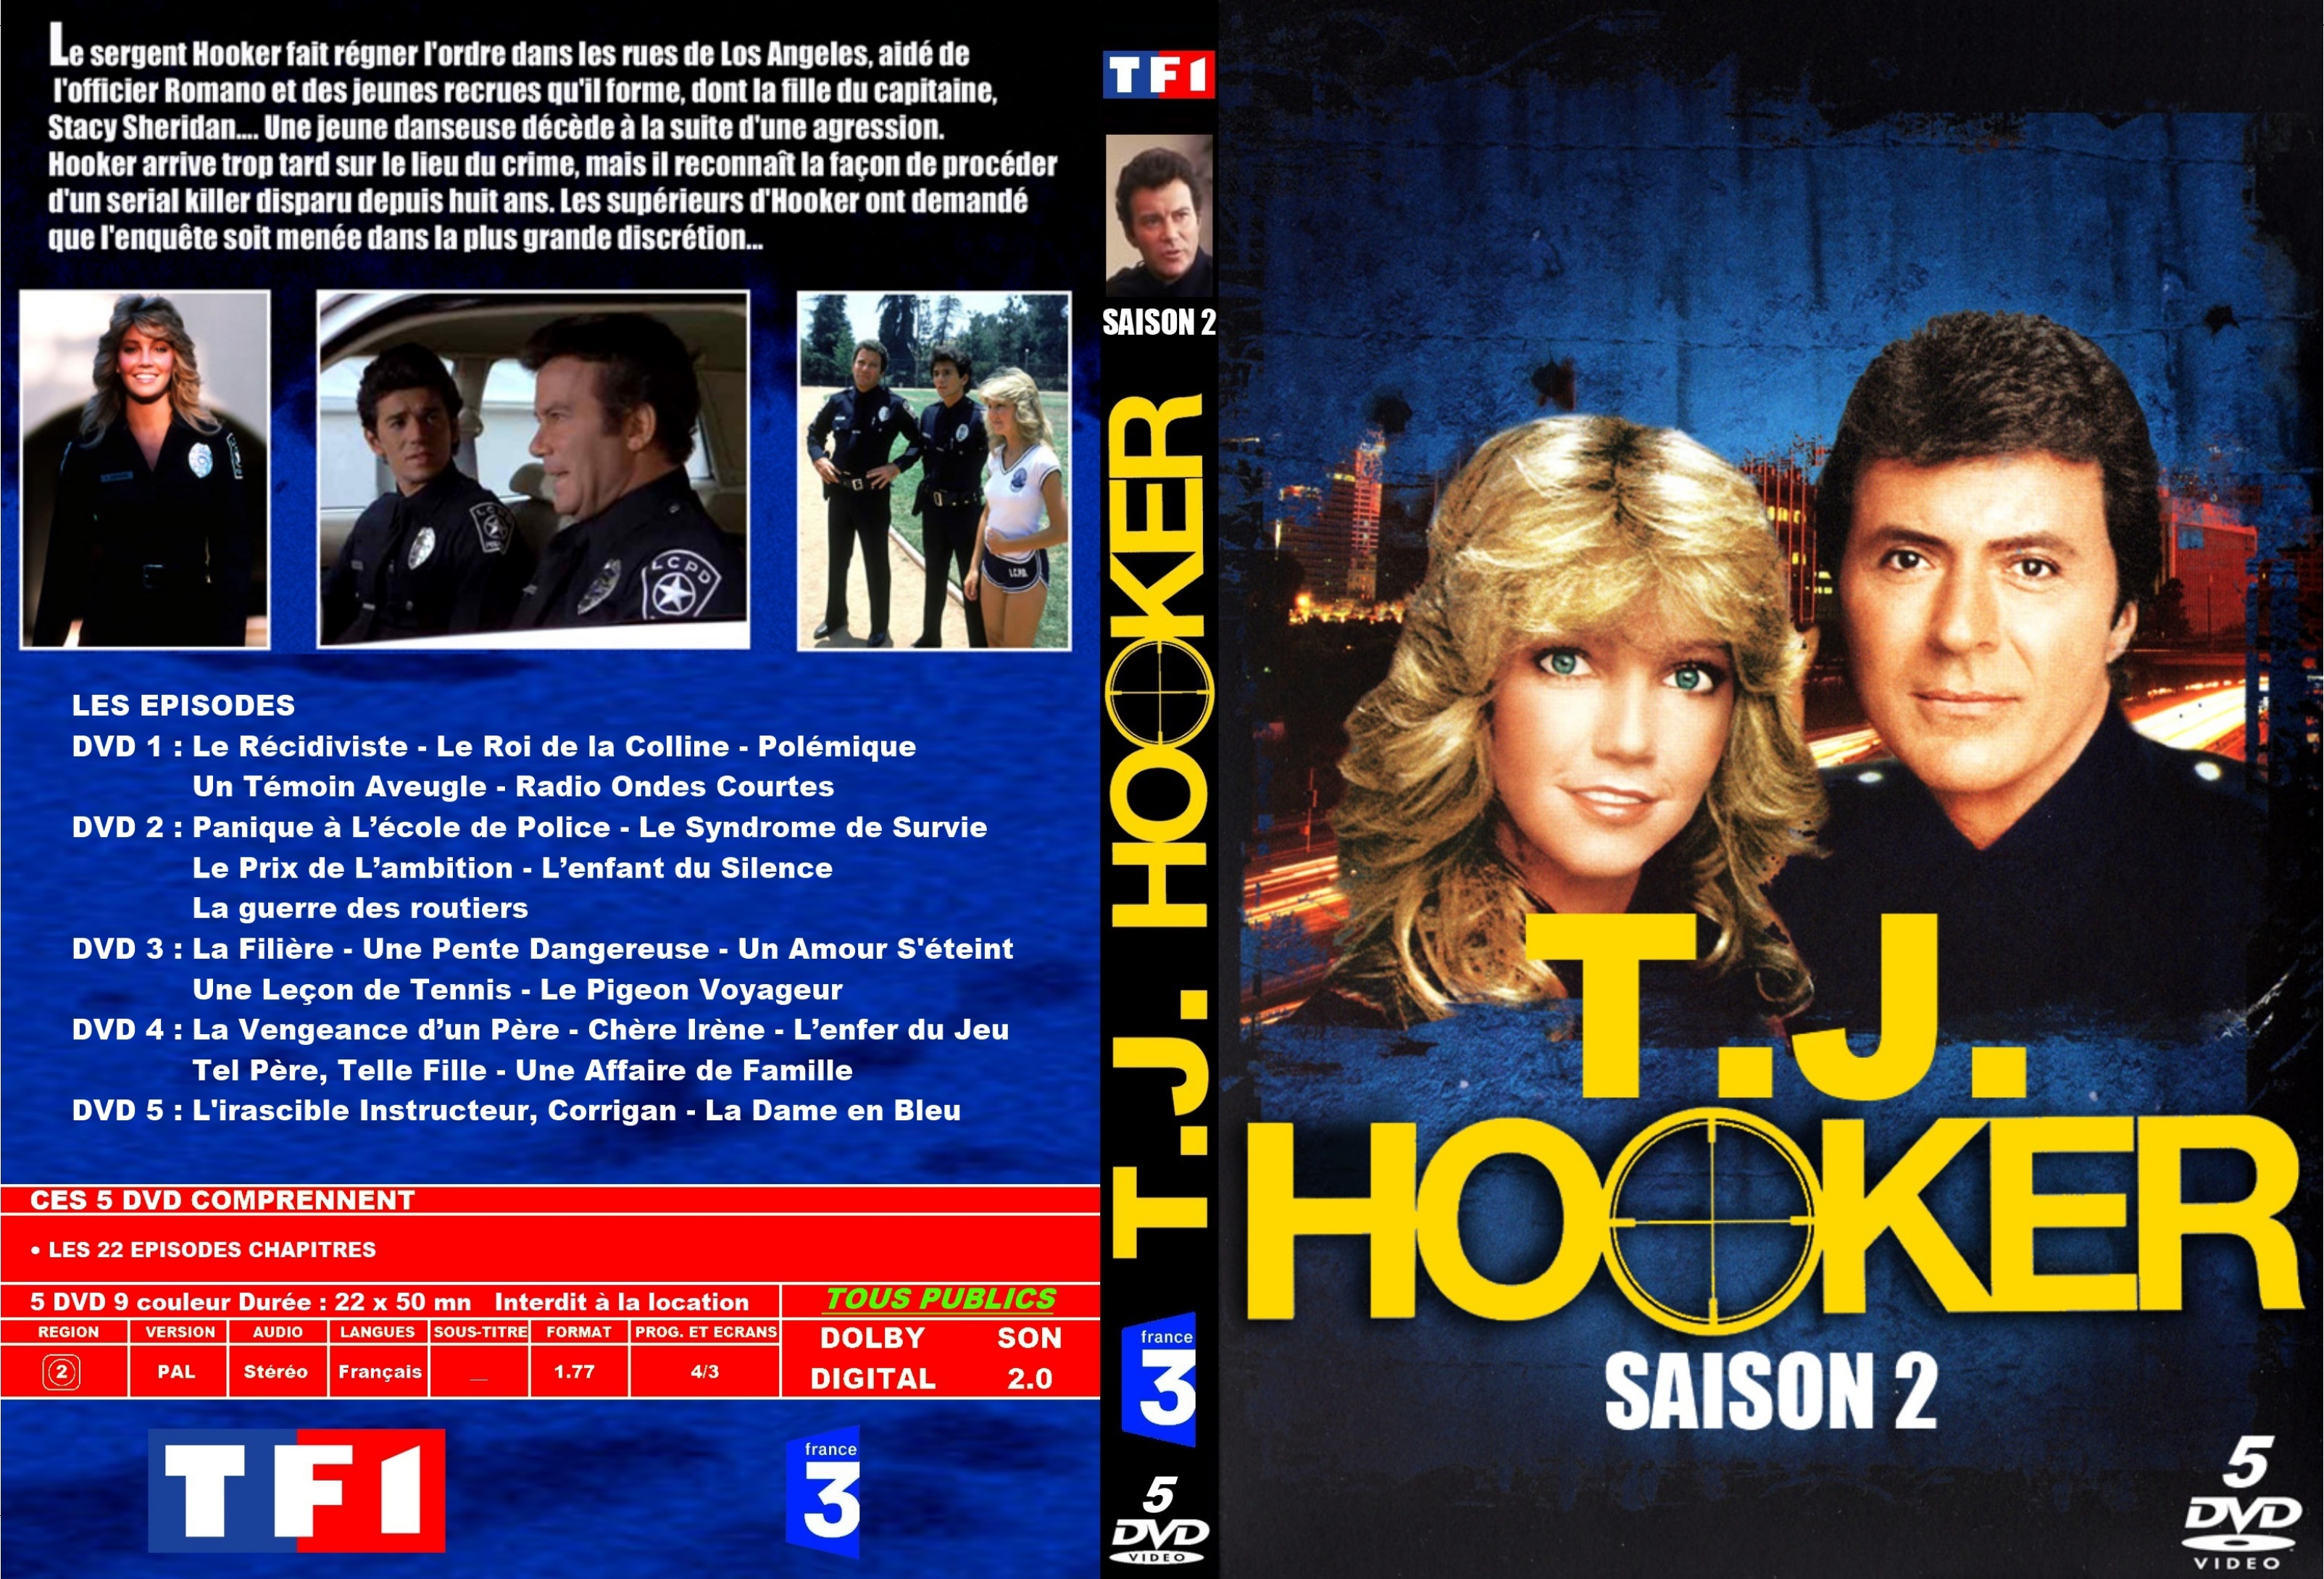 Jaquette DVD Hooker Saison 2 custom